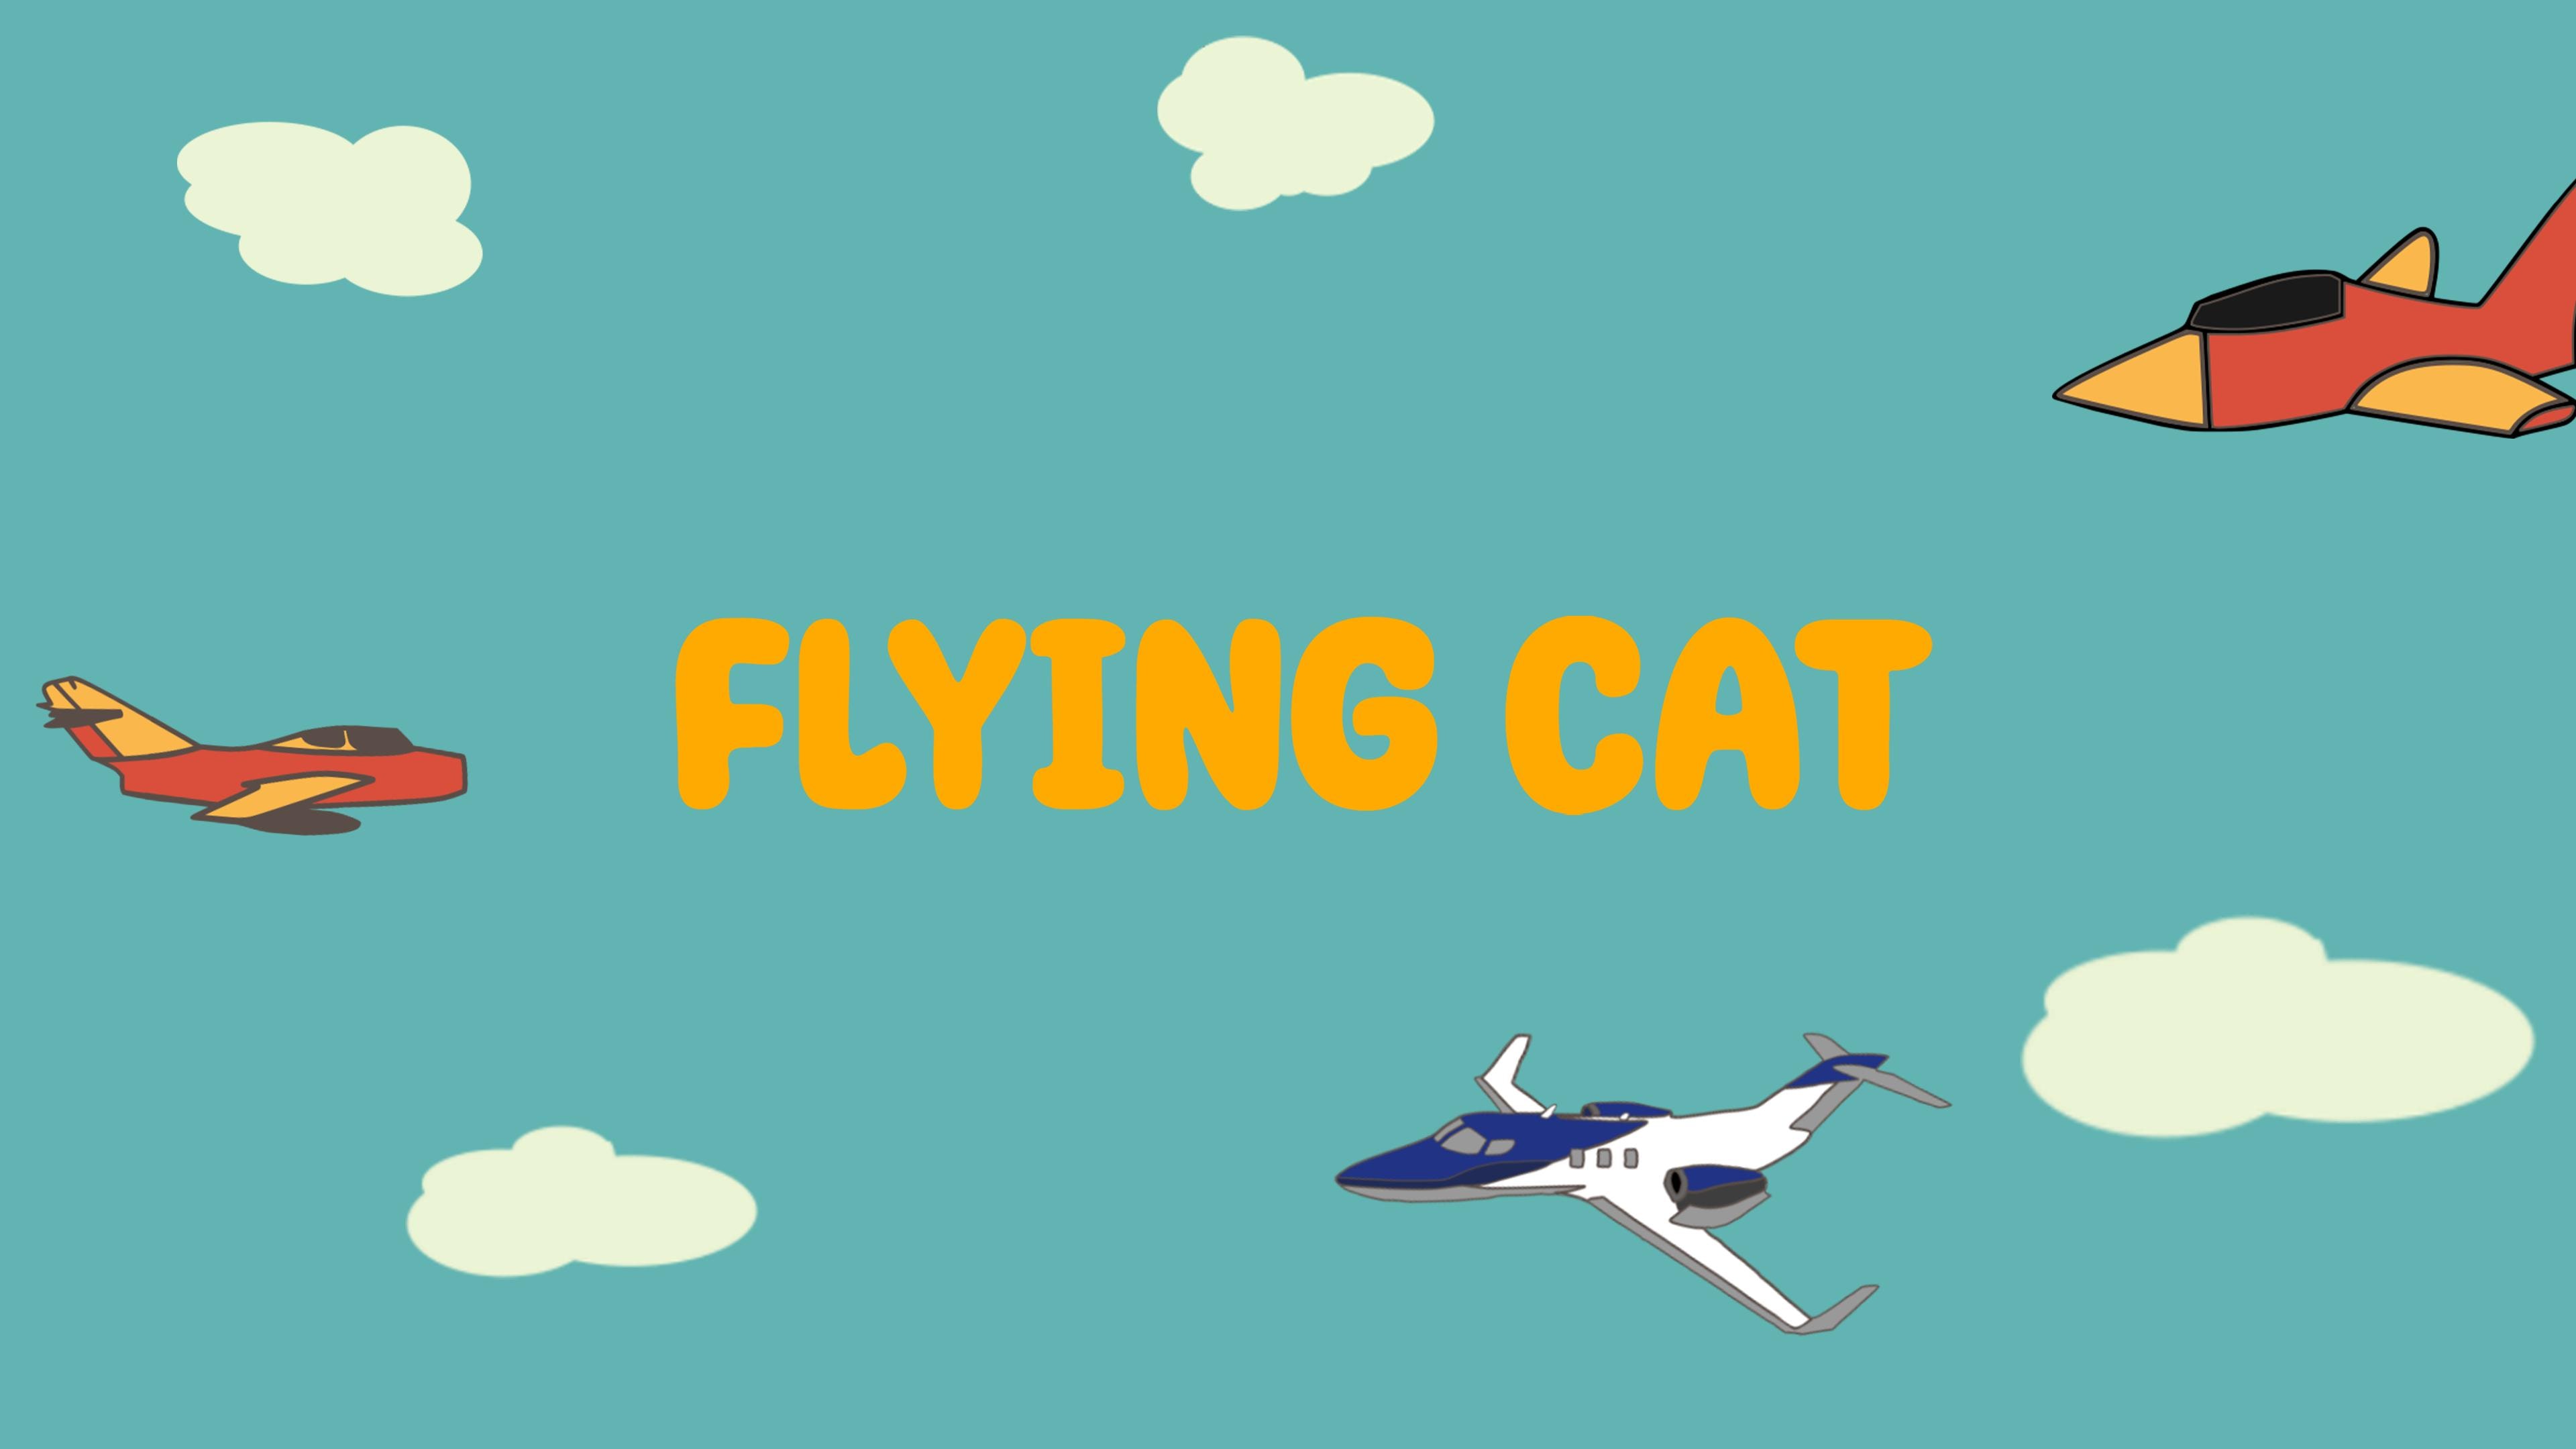 Flying cat (English)